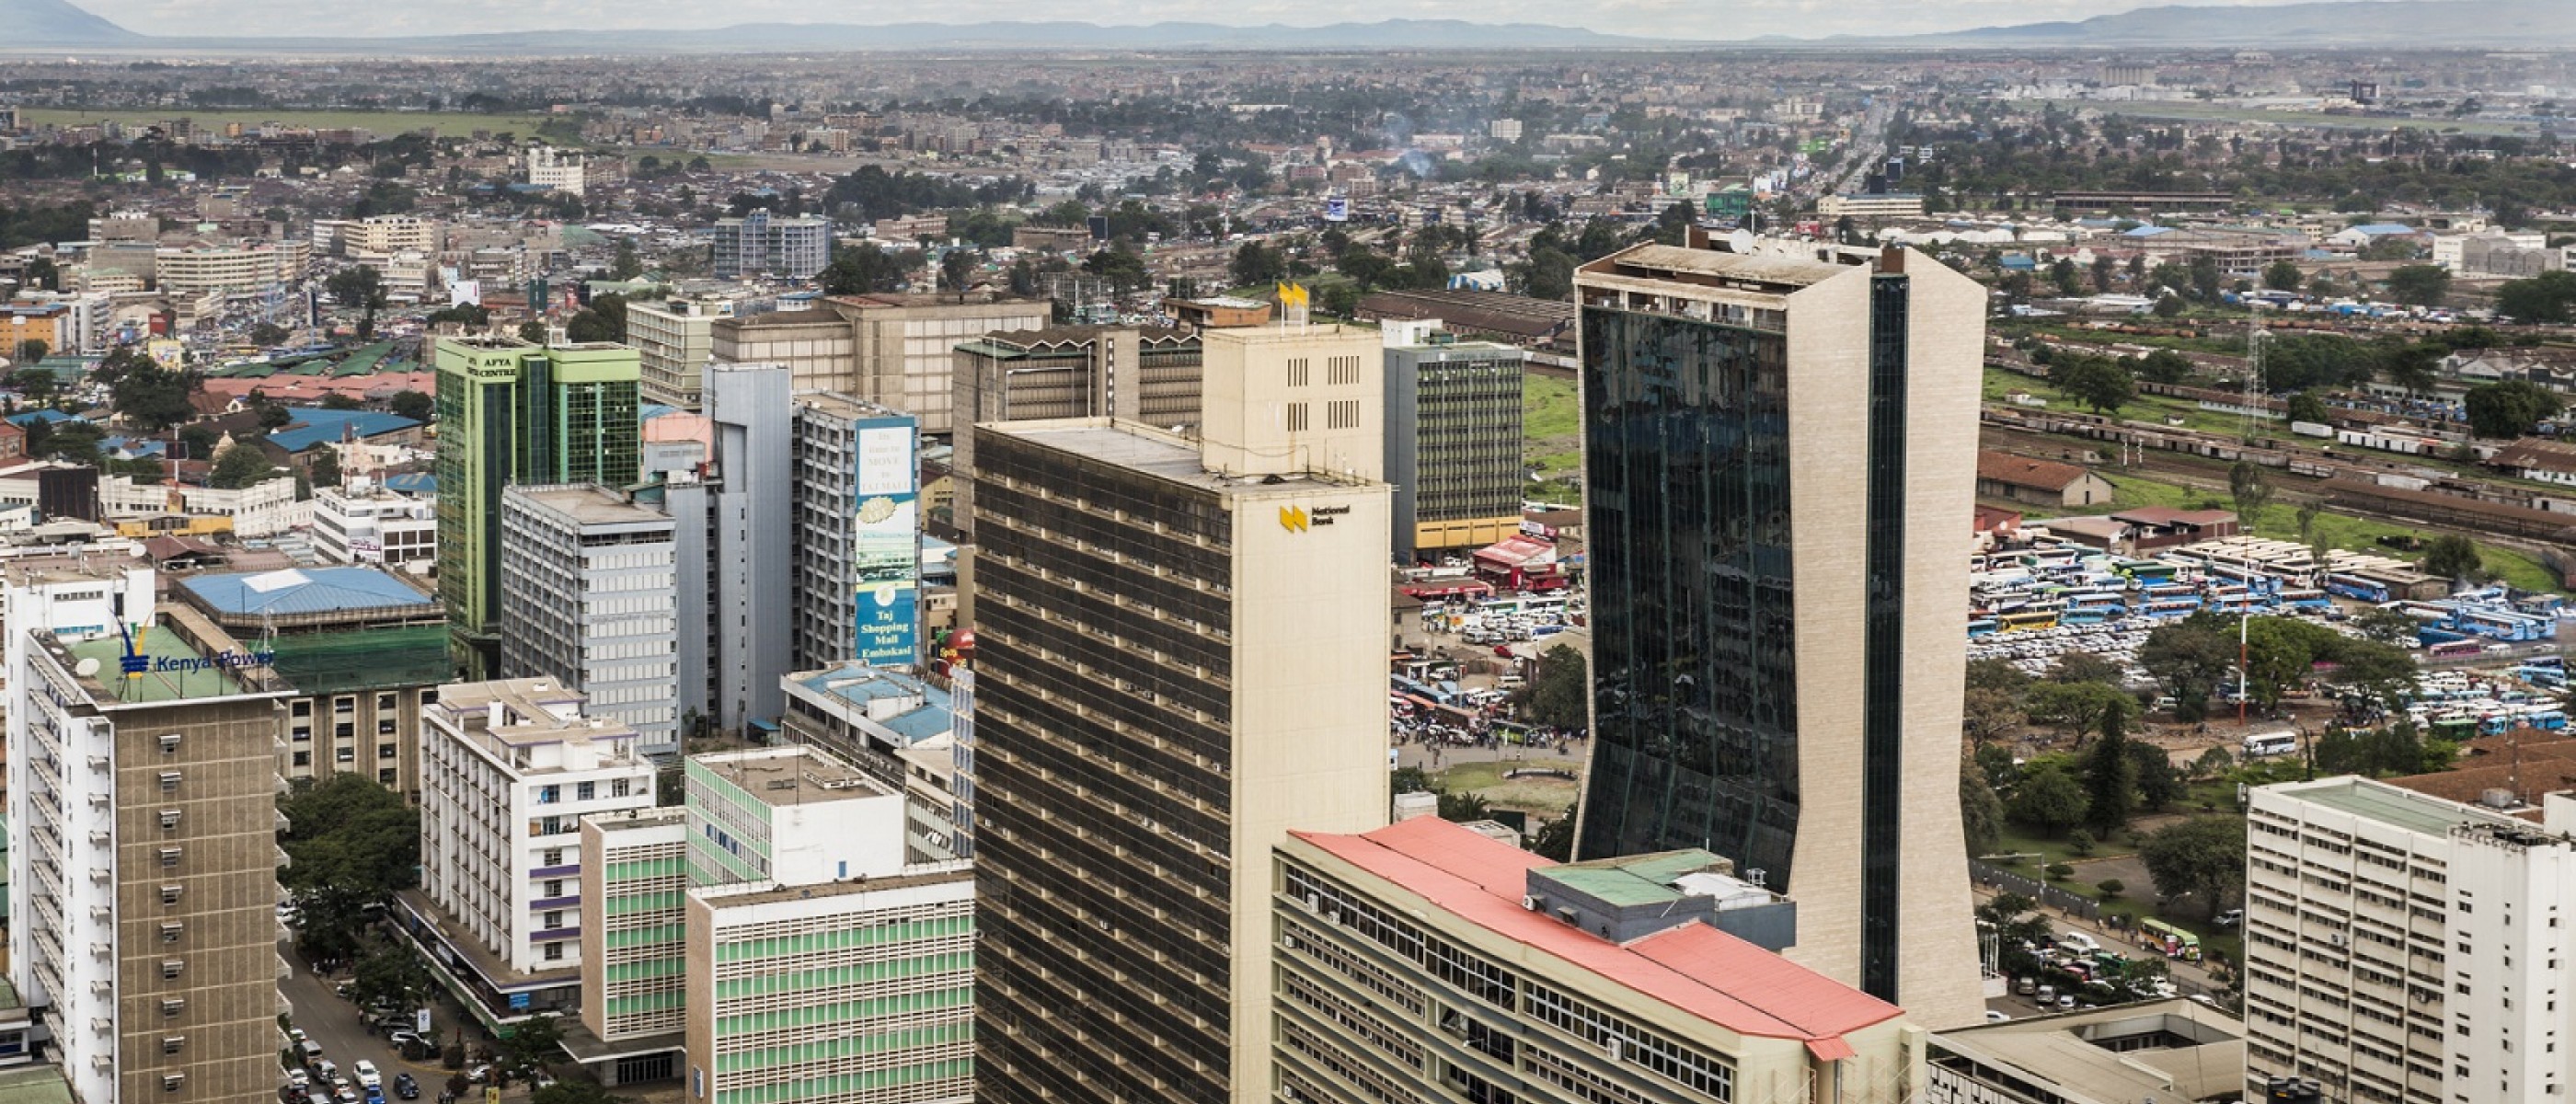 Африканская столица 5. Найроби (столица Кении). Найроби (столица Кении) про город. Найроби Африка. Климат Найроби.